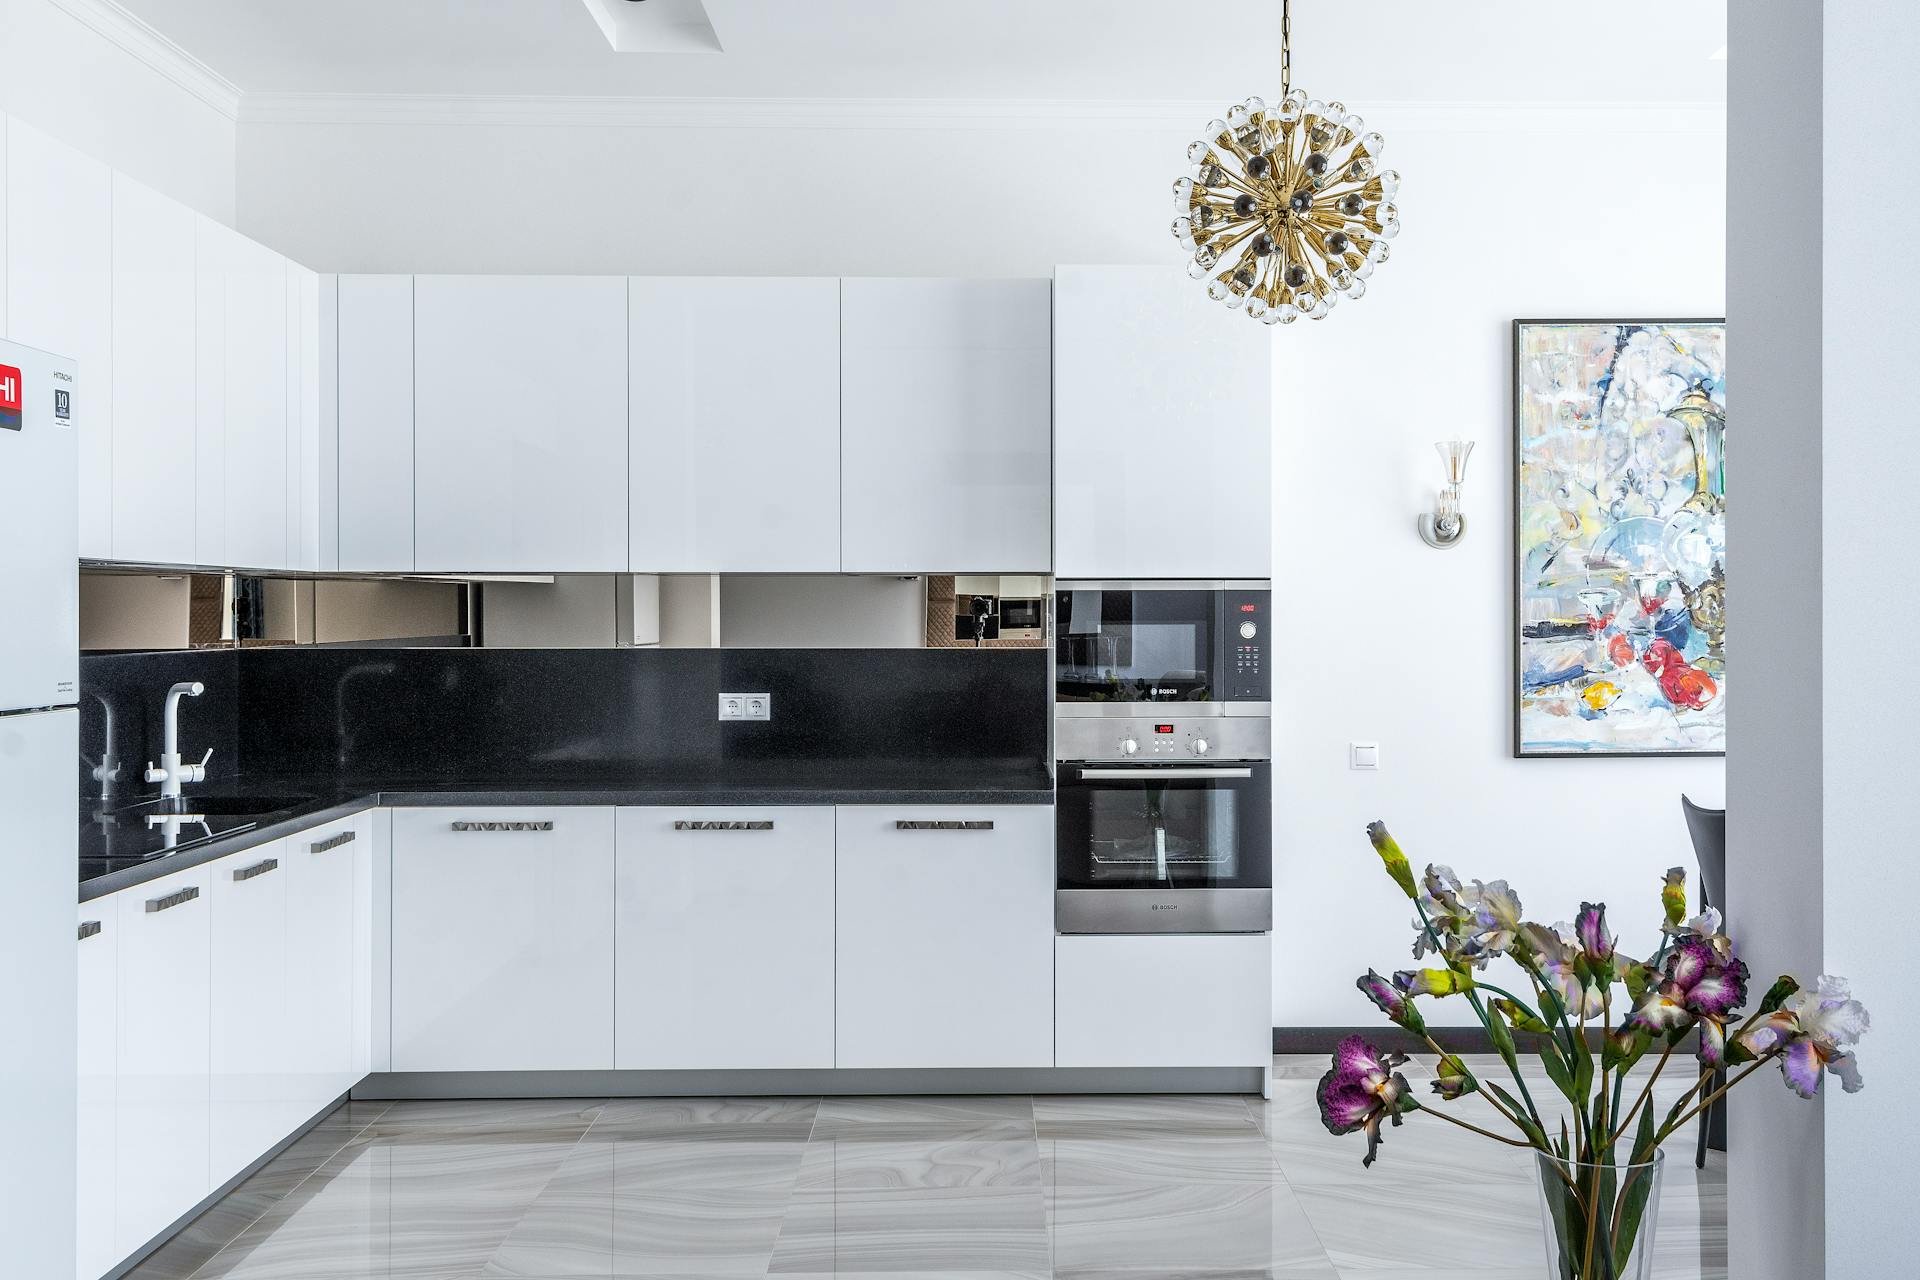 Stylish kitchen interior design with appliances